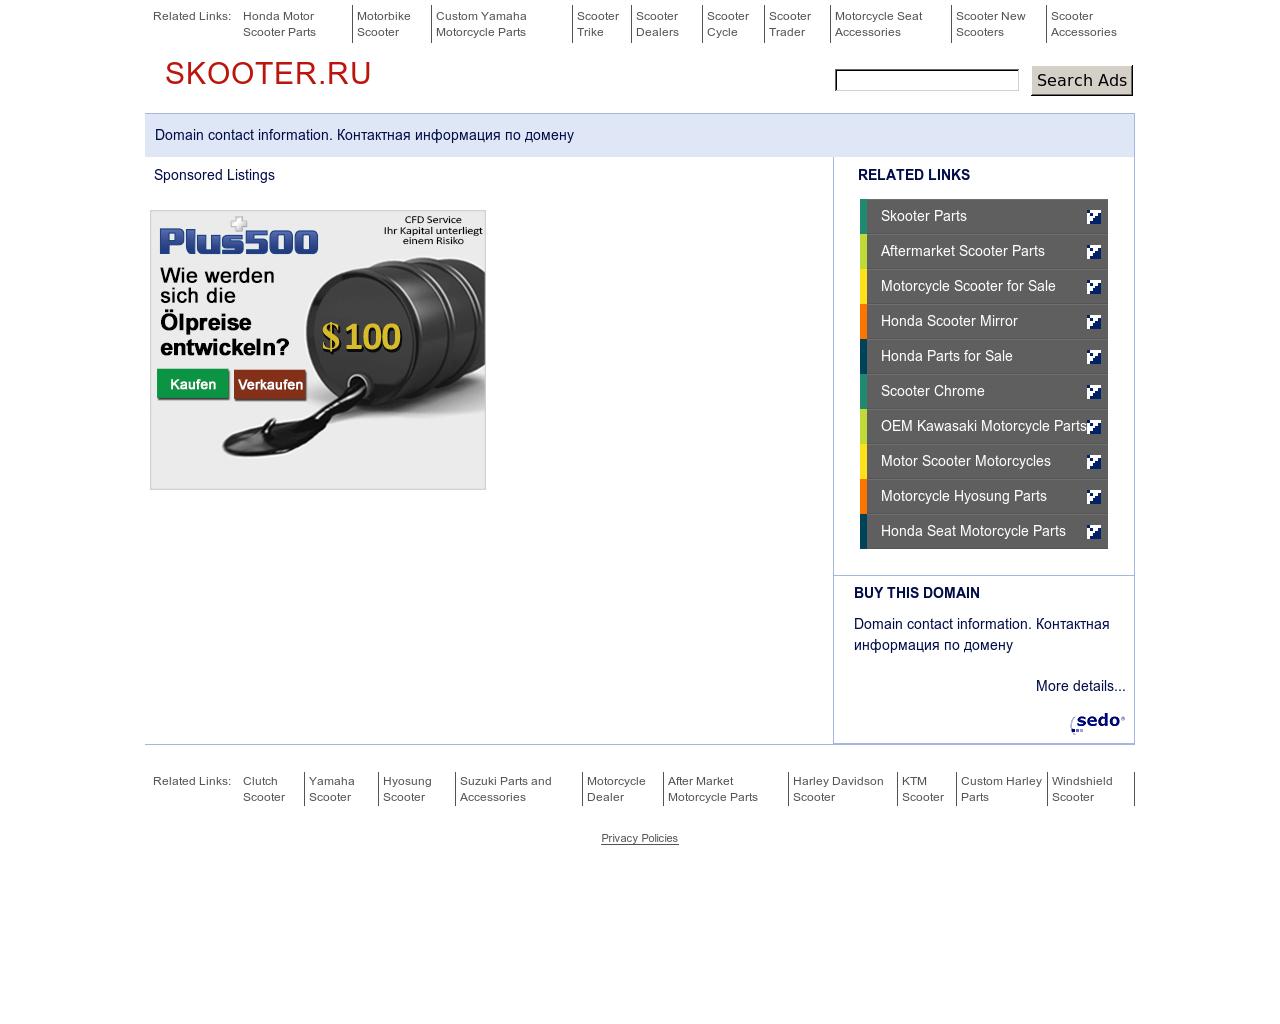 Изображение сайта skooter.ru в разрешении 1280x1024